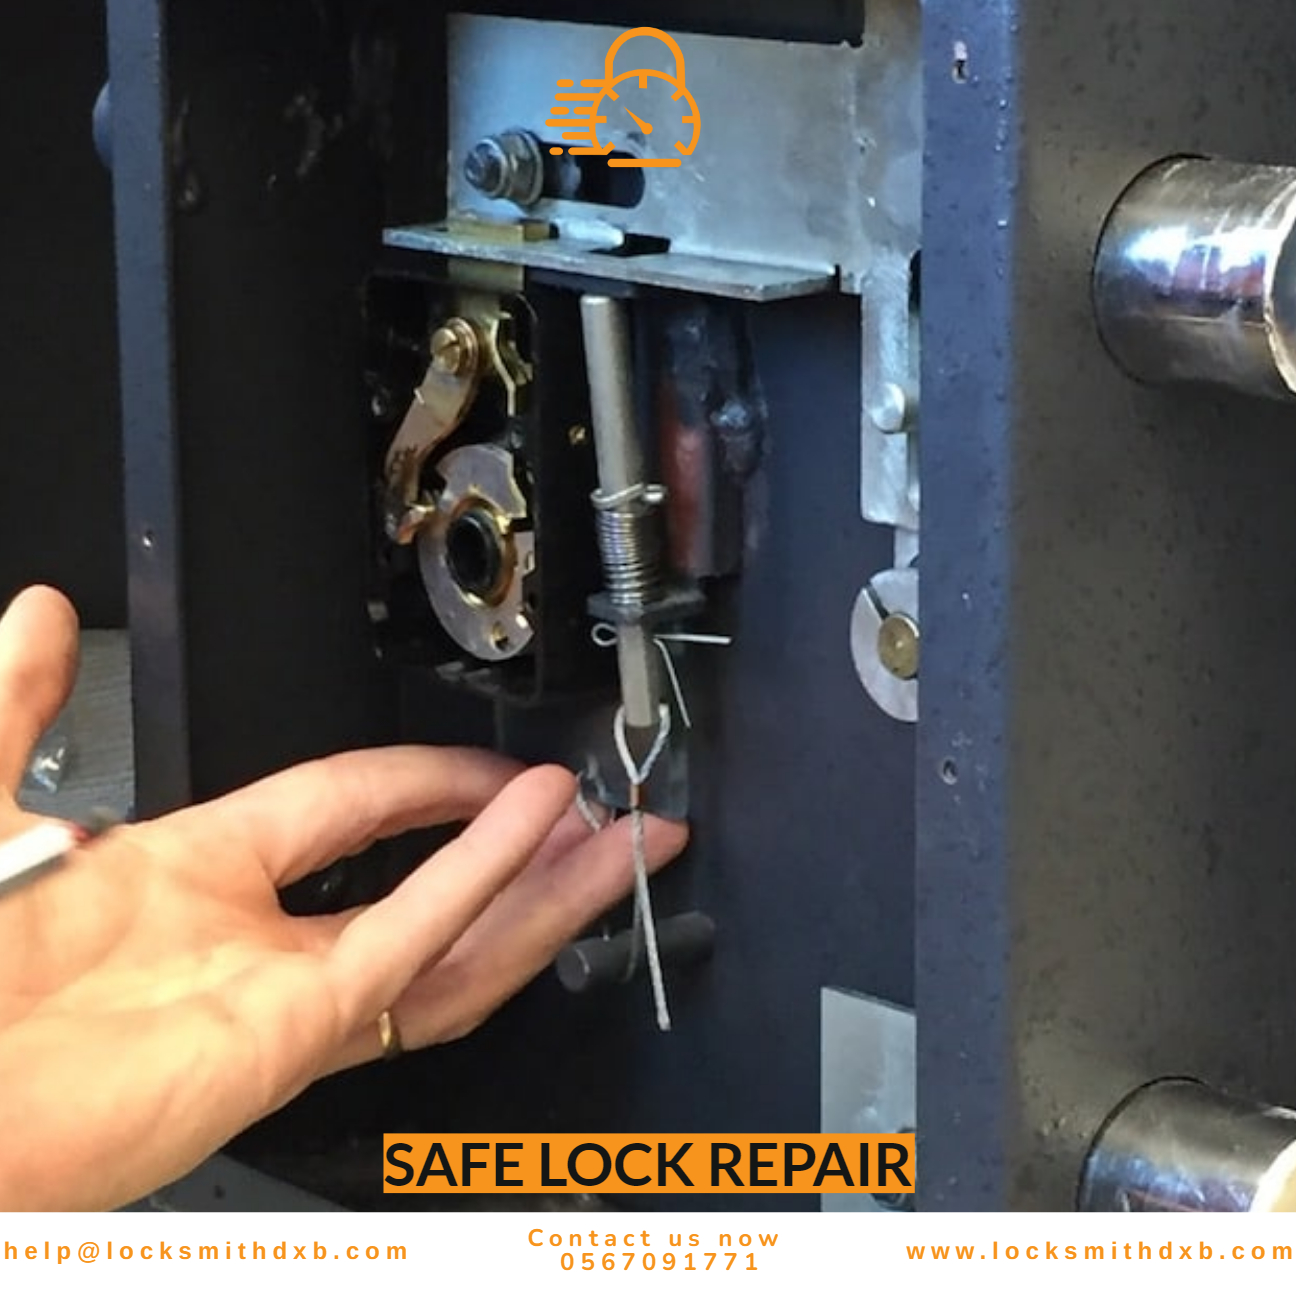 Safe lock repair